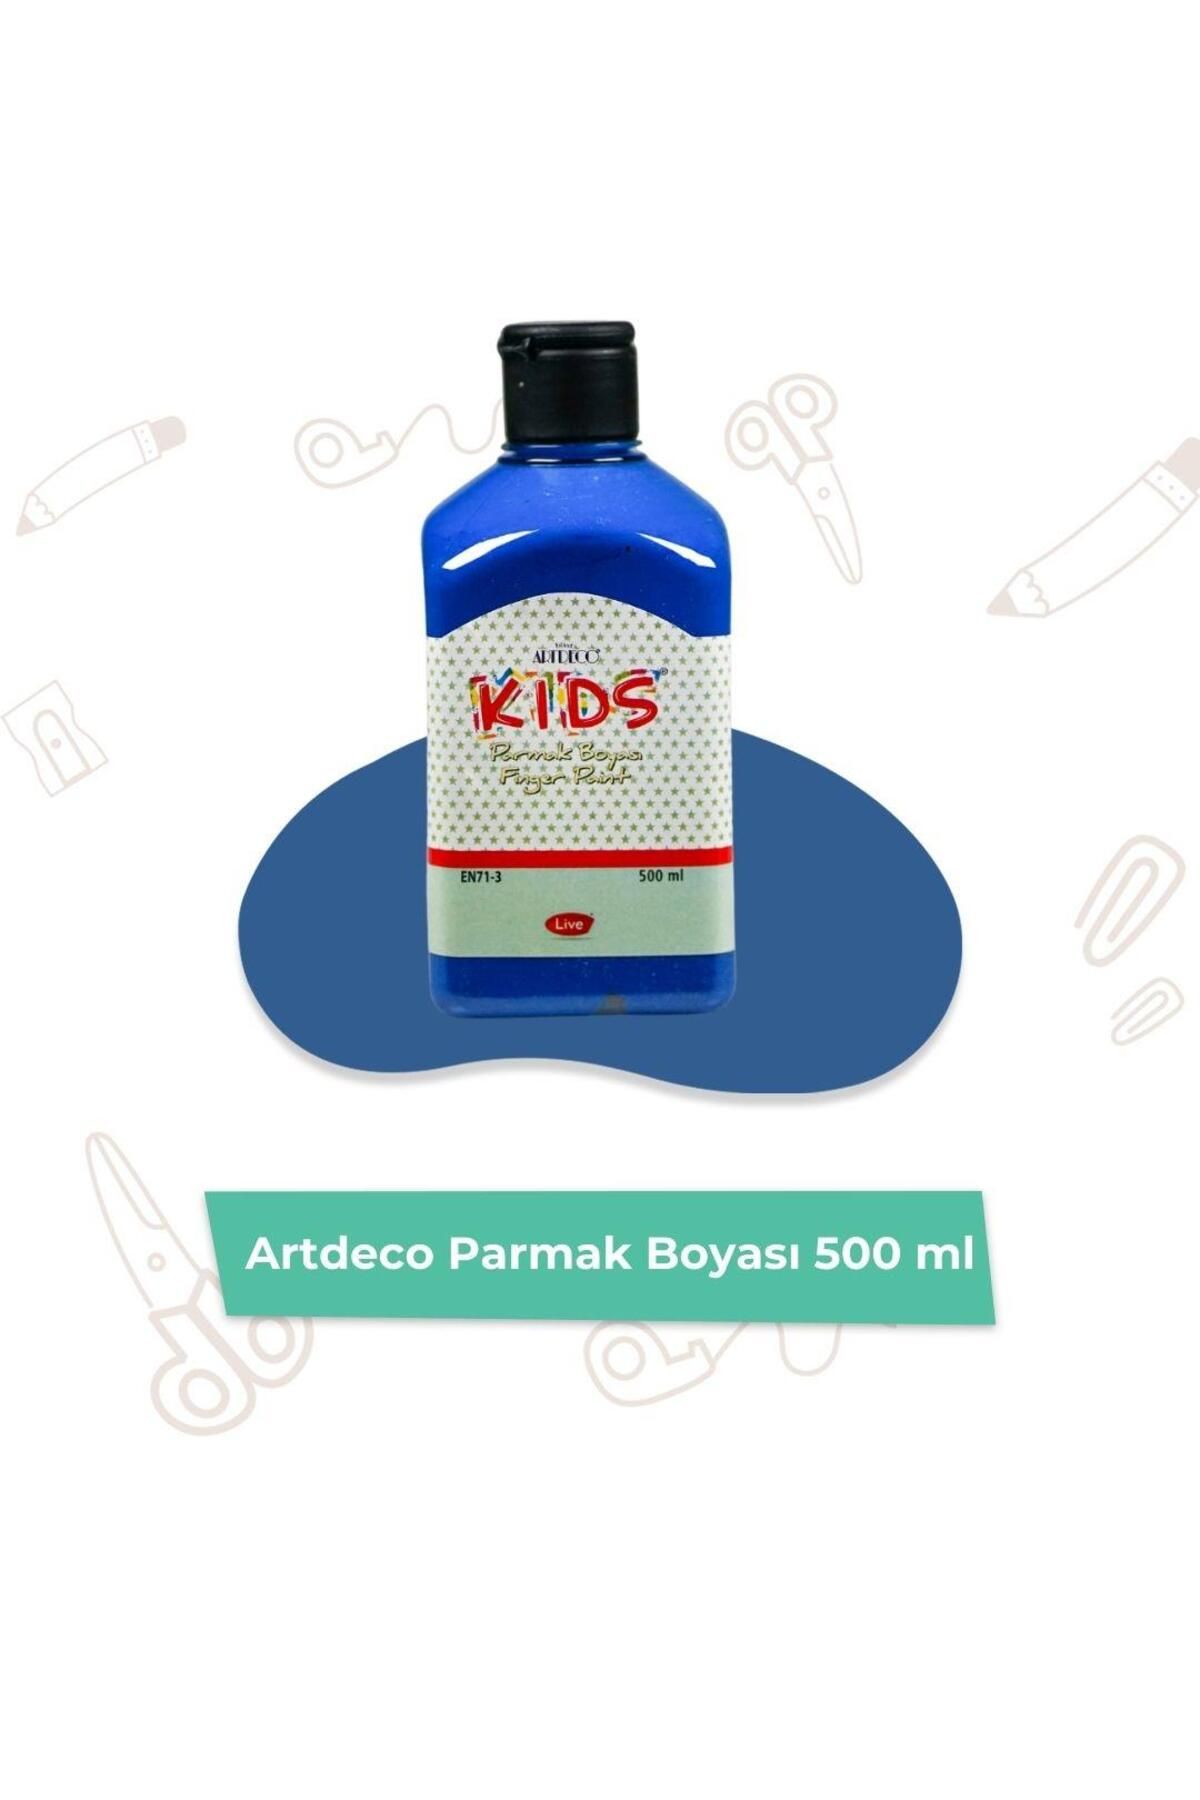 Artdeco Kids Parmak Boyası 500 ml En71-3 (MAVİ)